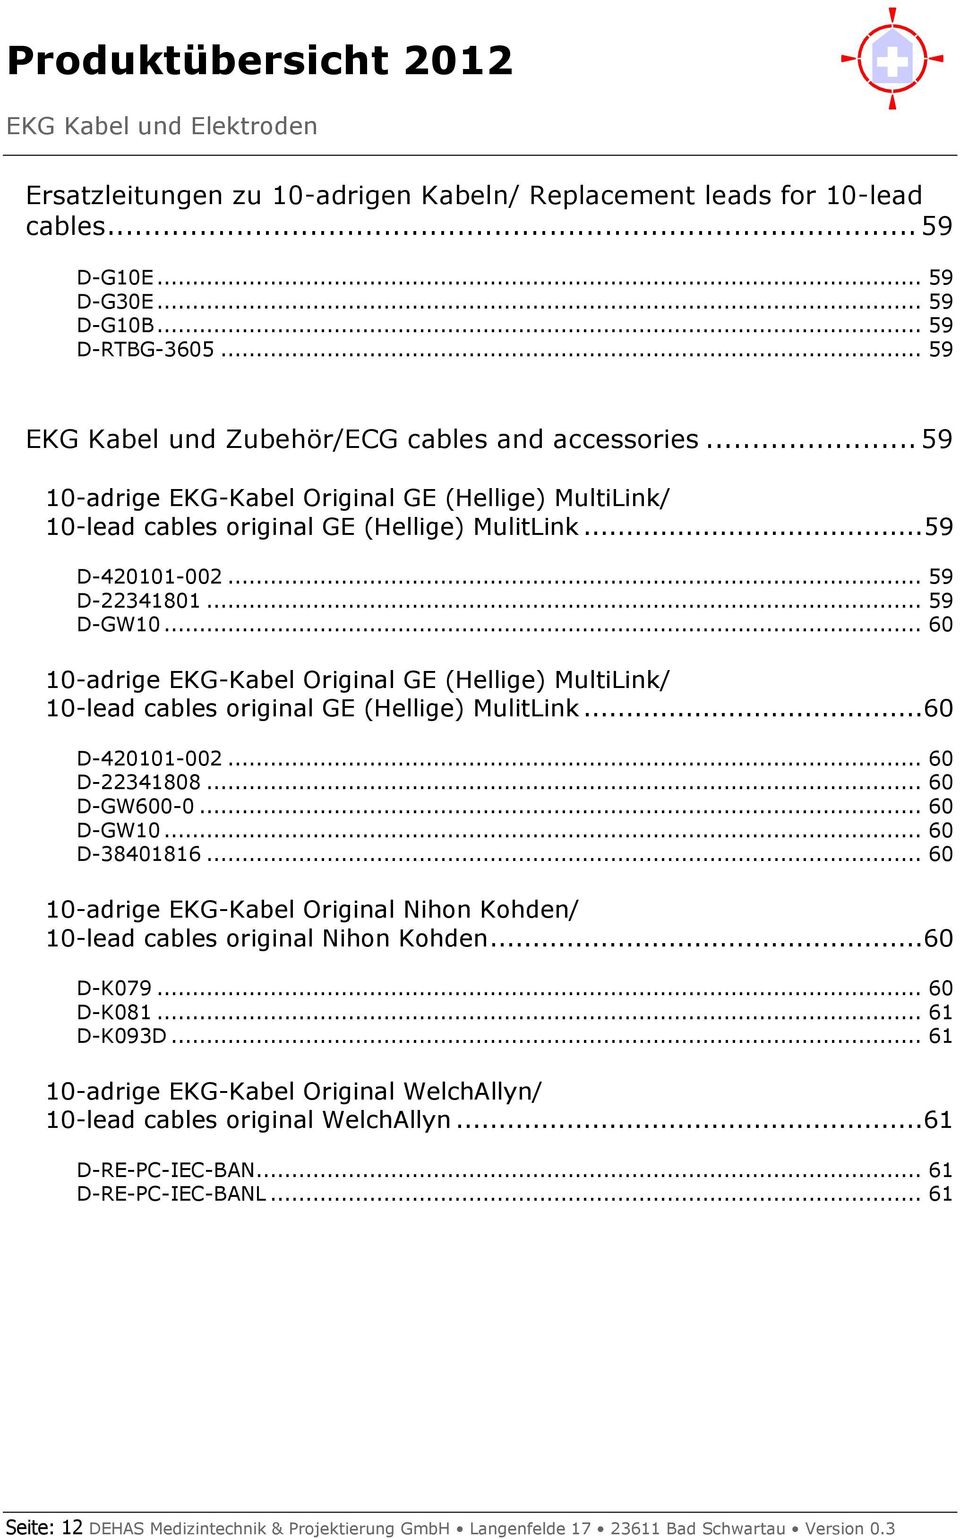 .. 60 10-adrige EKG-Kabel Original GE (Hellige) MultiLink/ 10-lead cables original GE (Hellige) MulitLink... 60 D-420101-002... 60 D-22341808... 60 D-GW600-0... 60 D-GW10... 60 D-38401816.